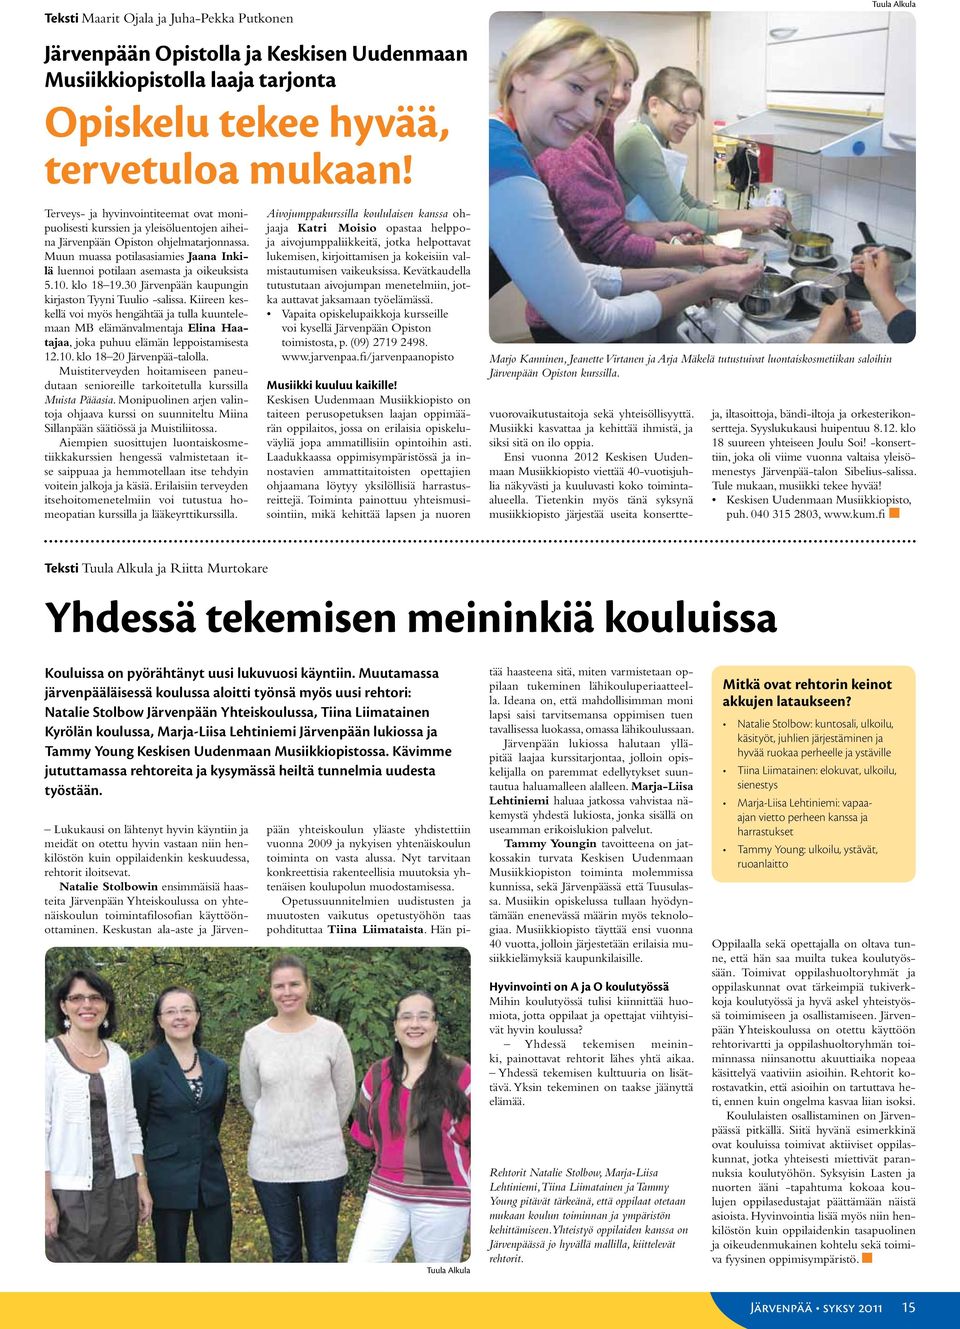 Muun muassa potilasasiamies Jaana Inkilä luennoi potilaan asemasta ja oikeuksista 5.10. klo 18 19.30 Järvenpään kaupungin kirjaston Tyyni Tuulio -salissa.